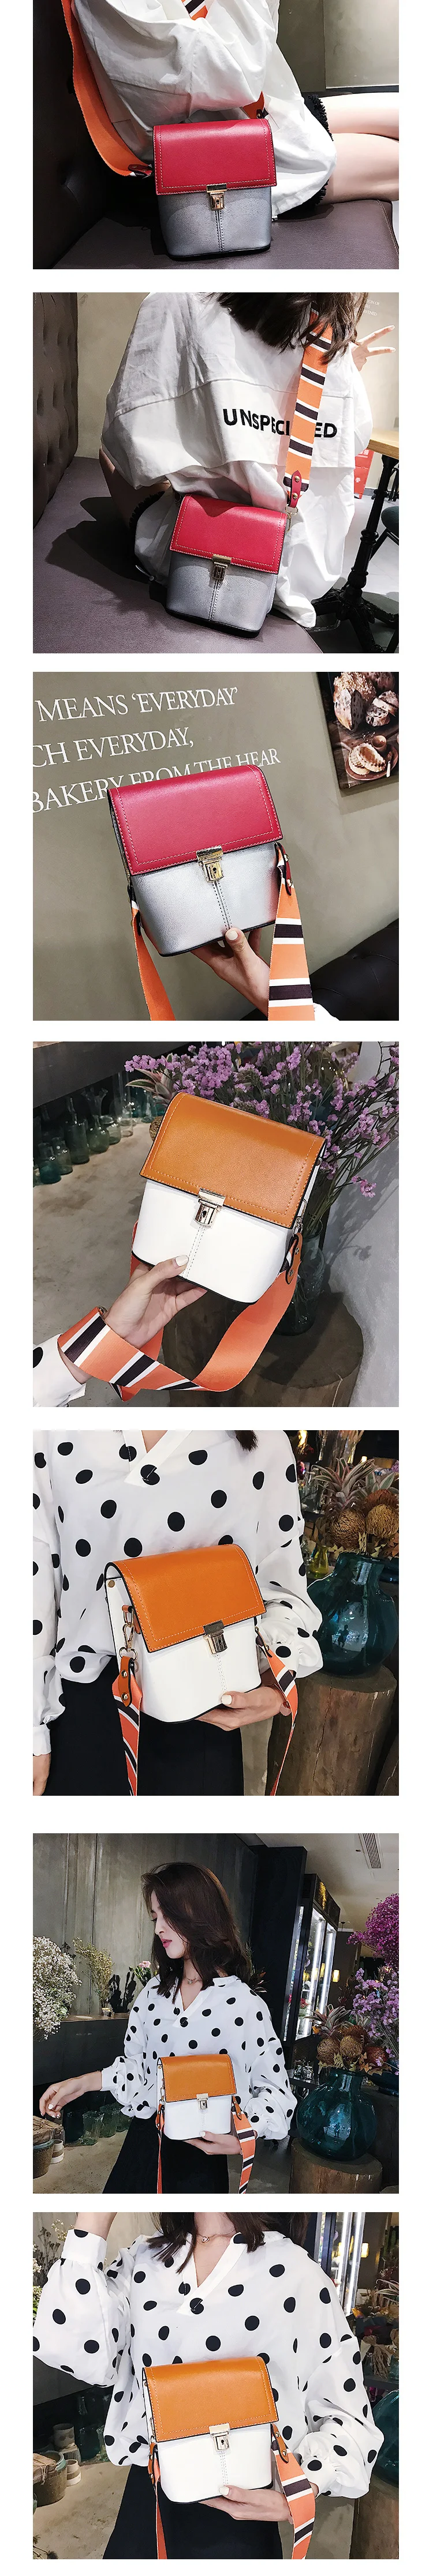 SHUNRUYAN 2019 новые брендовые дизайнерские женские сумки пряжка небольшой лоскут модная женска сумка посыльного сумка Кроссбоди Мешок